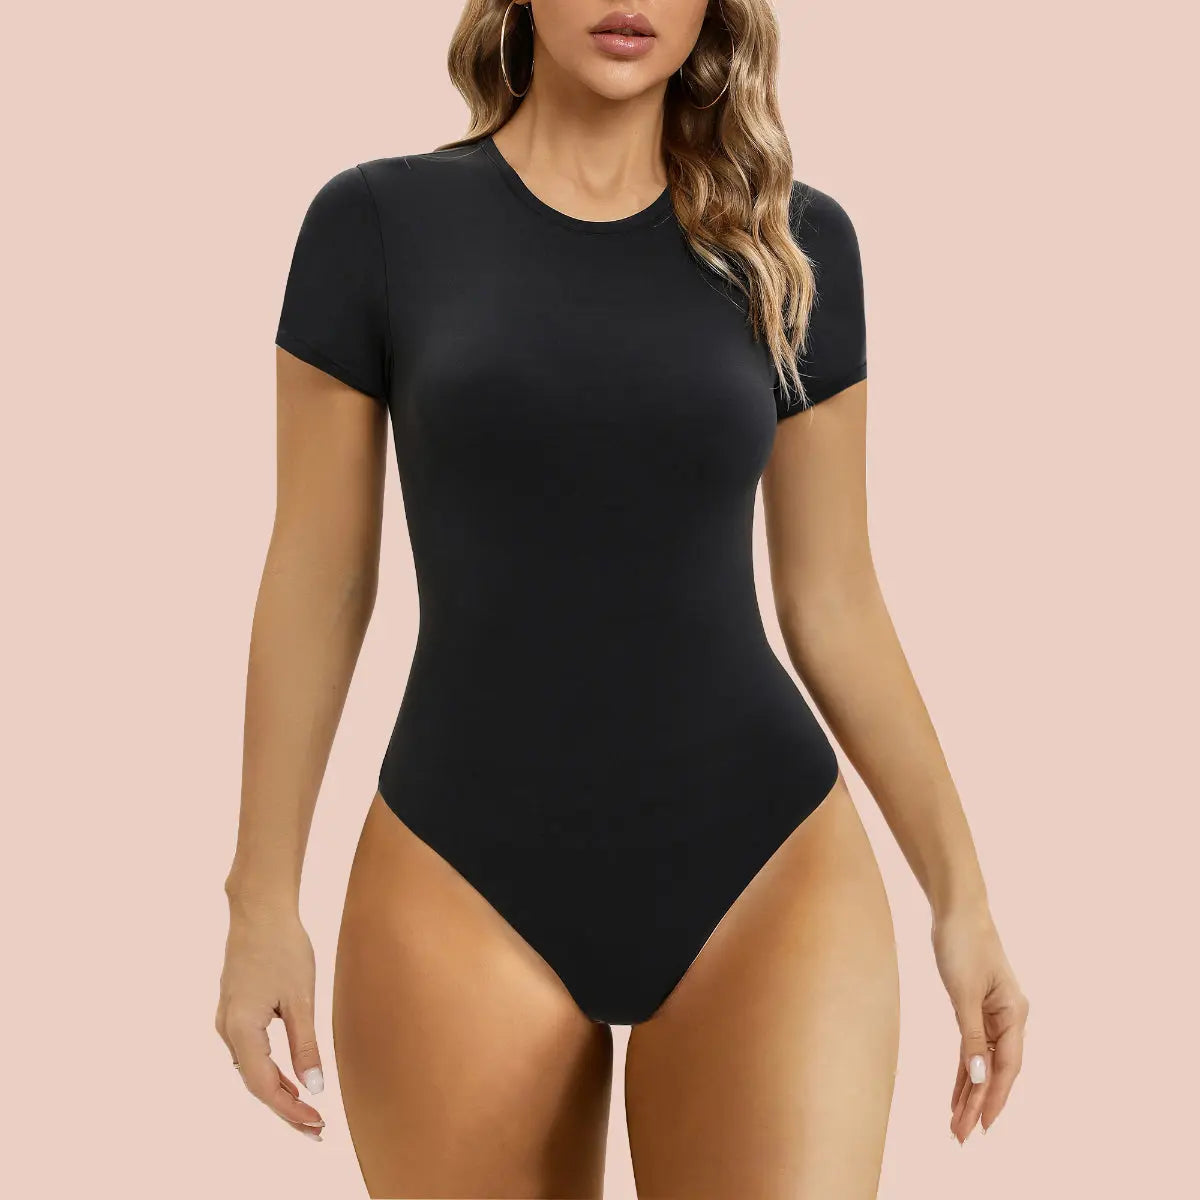  SHAPERX Seamless Short Sleeve Bodysuit For Women